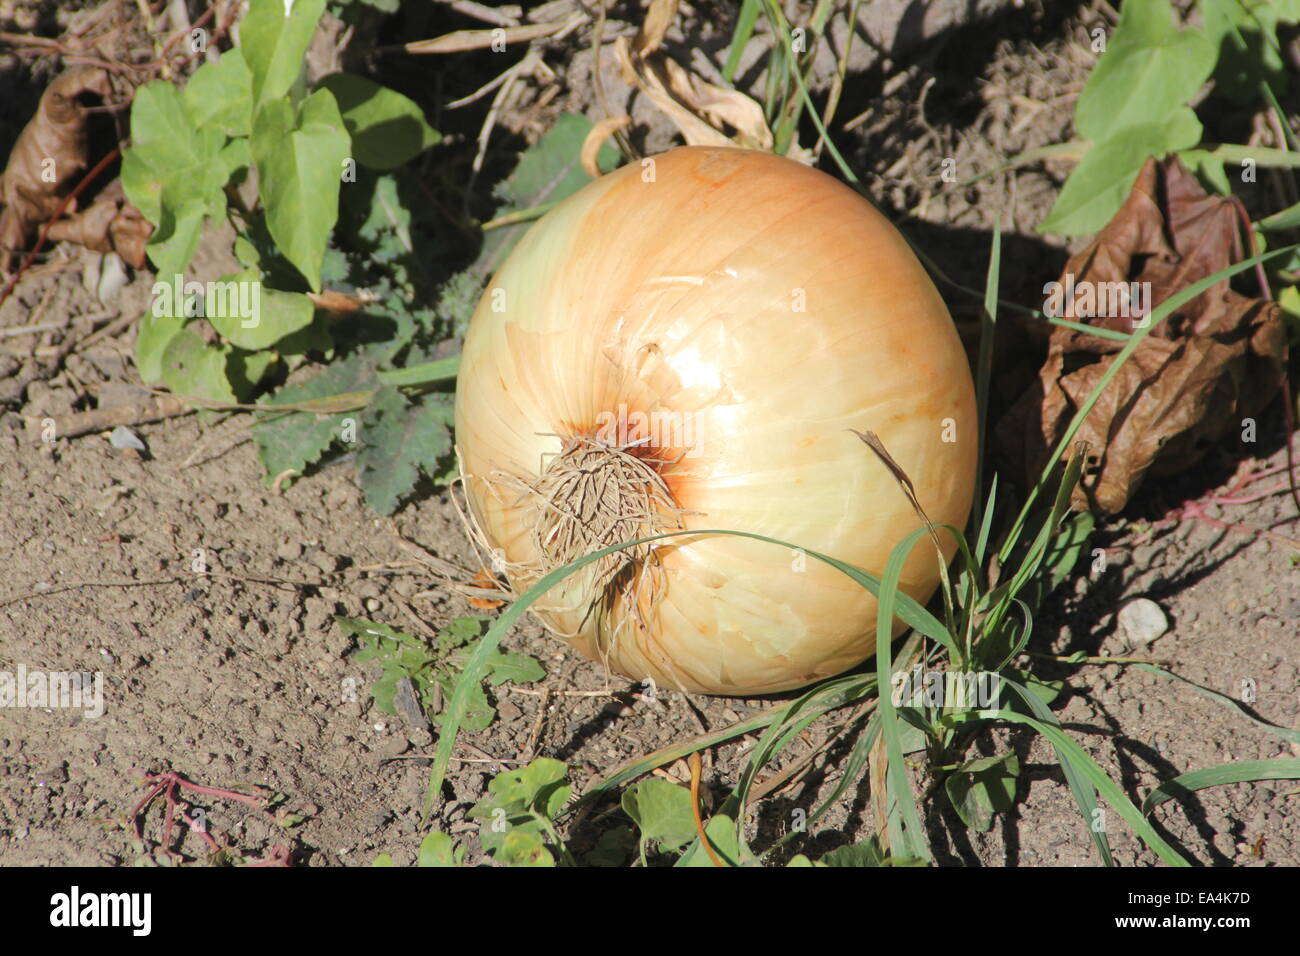 Di grandi dimensioni, cipolla dolce ancora sullo sporco dal giardino. Foto Stock